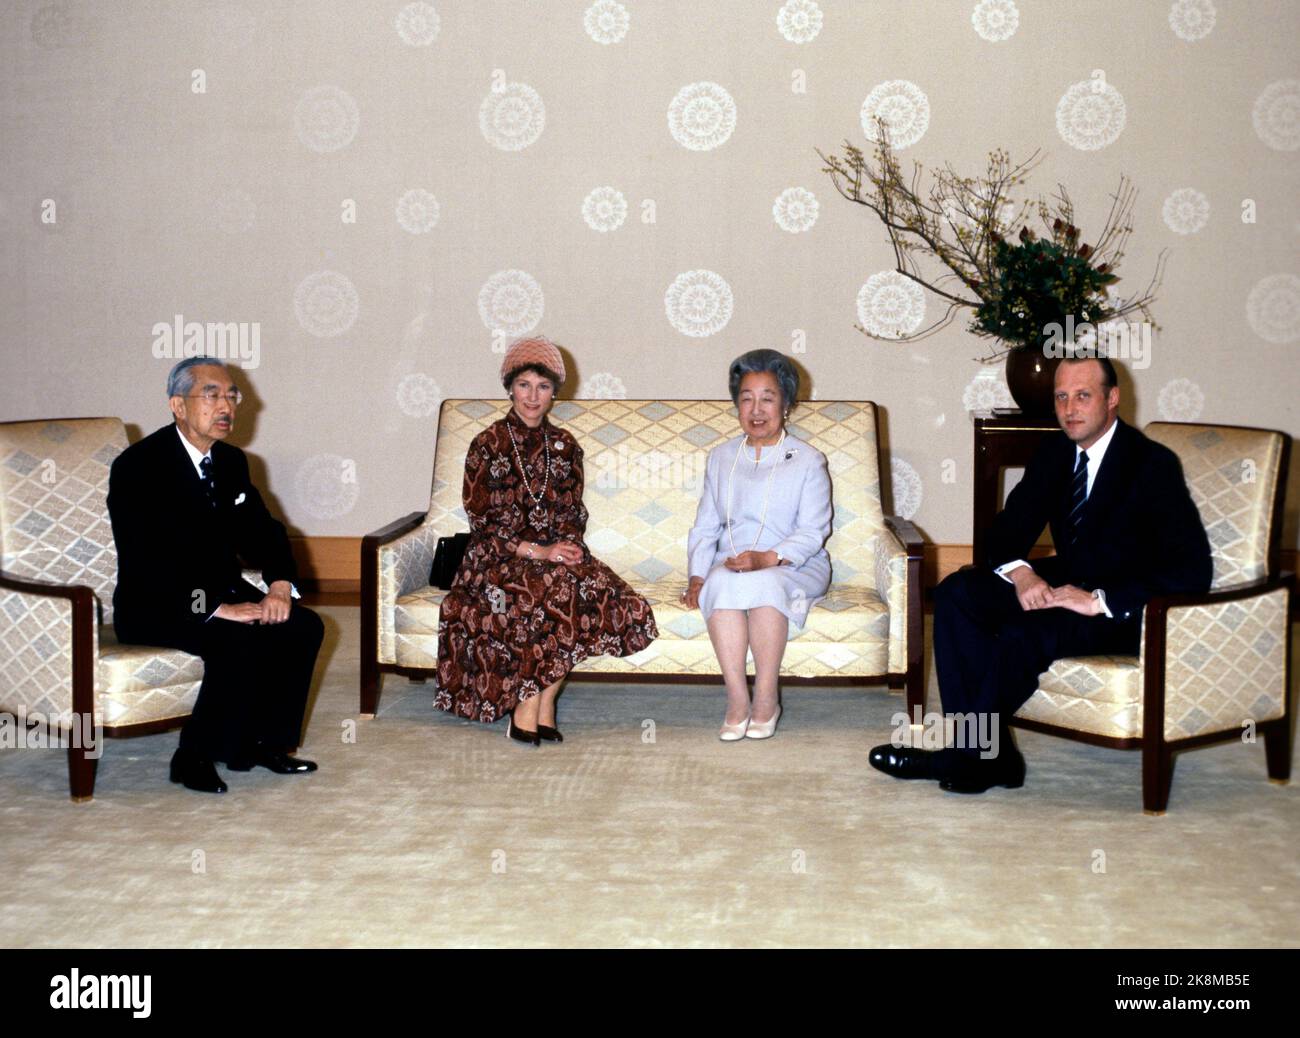 Tokyo, Giappone 19780209. Il principe ereditario Harald e la principessa ereditaria Sonja visitano l'est. Qui nel pubblico dell'Imperatore Hirohito e dell'Imperatore Nagako. Foto: Vena Hammerstad NTB / NTB Foto Stock